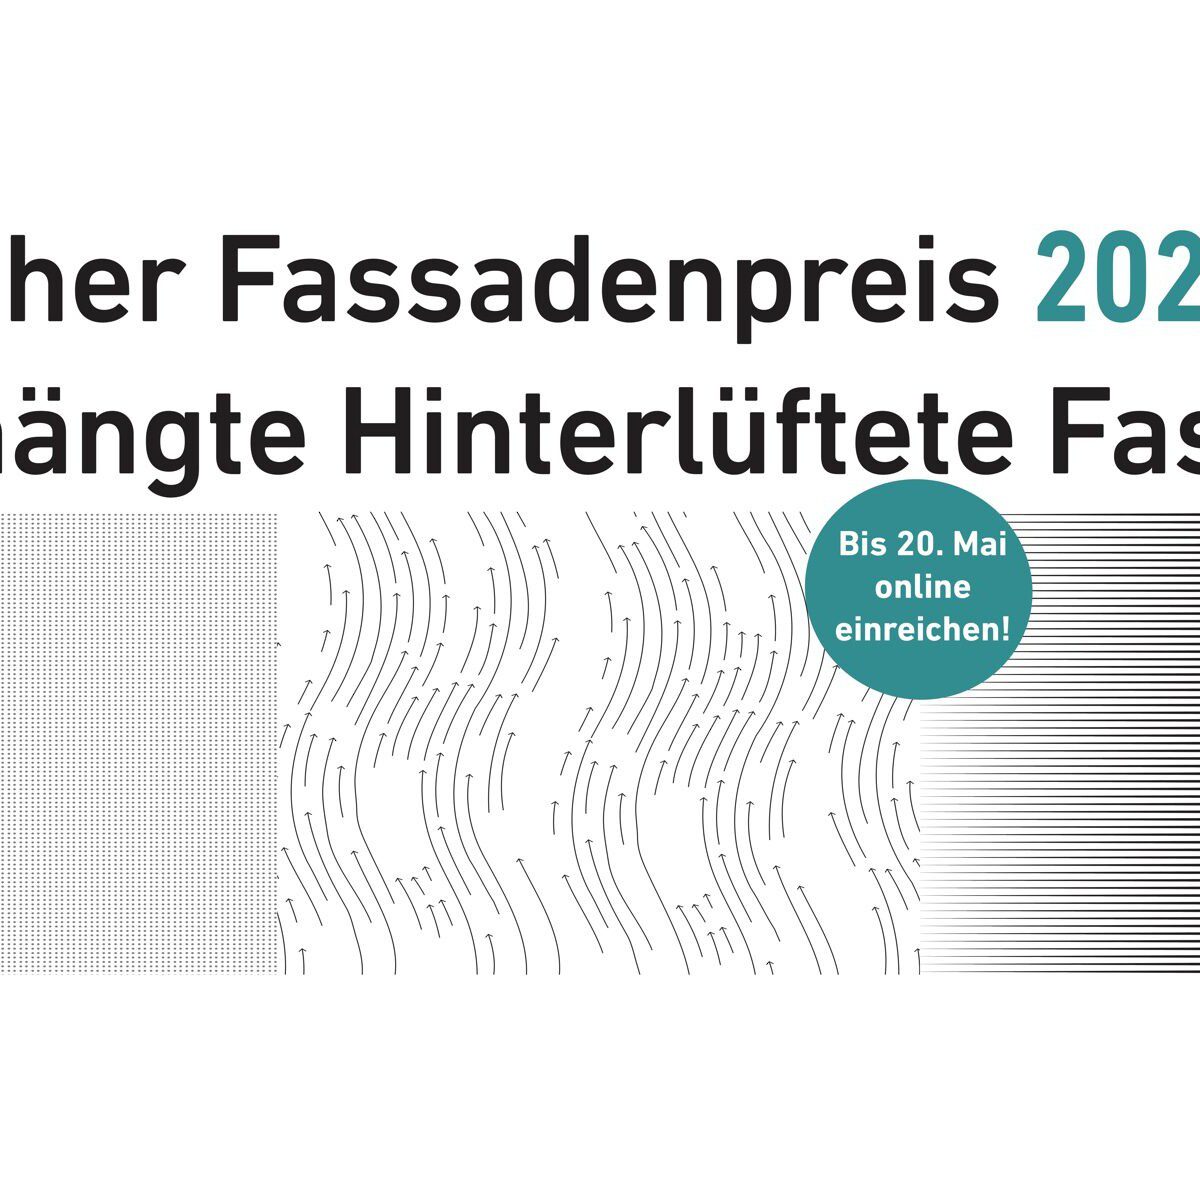 Der Deutsche Fassadenpreis 2022 für Vorgehängte Hinterlüftete Fassaden (VHF) prämiert außergewöhnliche Architekturfassaden (Grafik: FVHF)